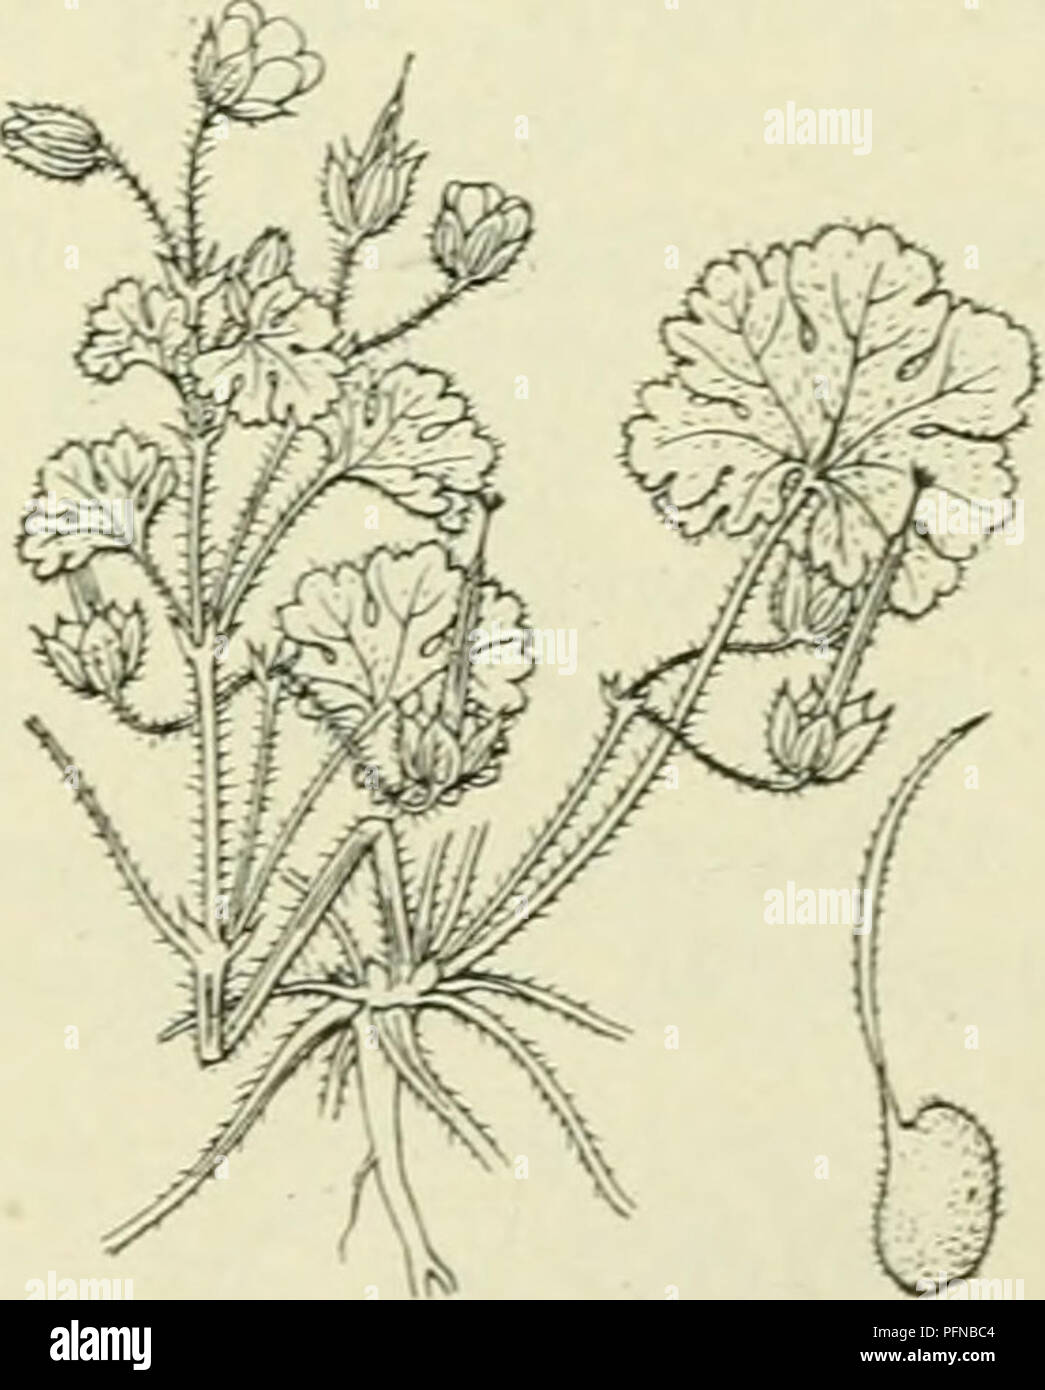 . De flora van Nederland. Plants. Geranium silvaticum Fig. 435. Of G. rotundifÃ³lium -; L. R o n d b 1 a d-o oievaarsbek (fig. 436). Deze soort komt nog al met G. pusillum en O. molle overeen, doch wijkt o.a. af door de iets grootere, roseroode, ongedeelde kroonbladen en de slechts gelobde bladen. Uit den penwortel komen uitgespreid vertakte, zacht behaarde stengels, die liggend, opstijgend of rechtopgaand zijn. De geheele plant is door afstaande haren zacht behaard en daartusschen komen naar boven klierharen voor. De onderste bladen zijn lang- gesteeld. diep nier-hartvormig, 5-7-lobbig, de ho Stock Photo